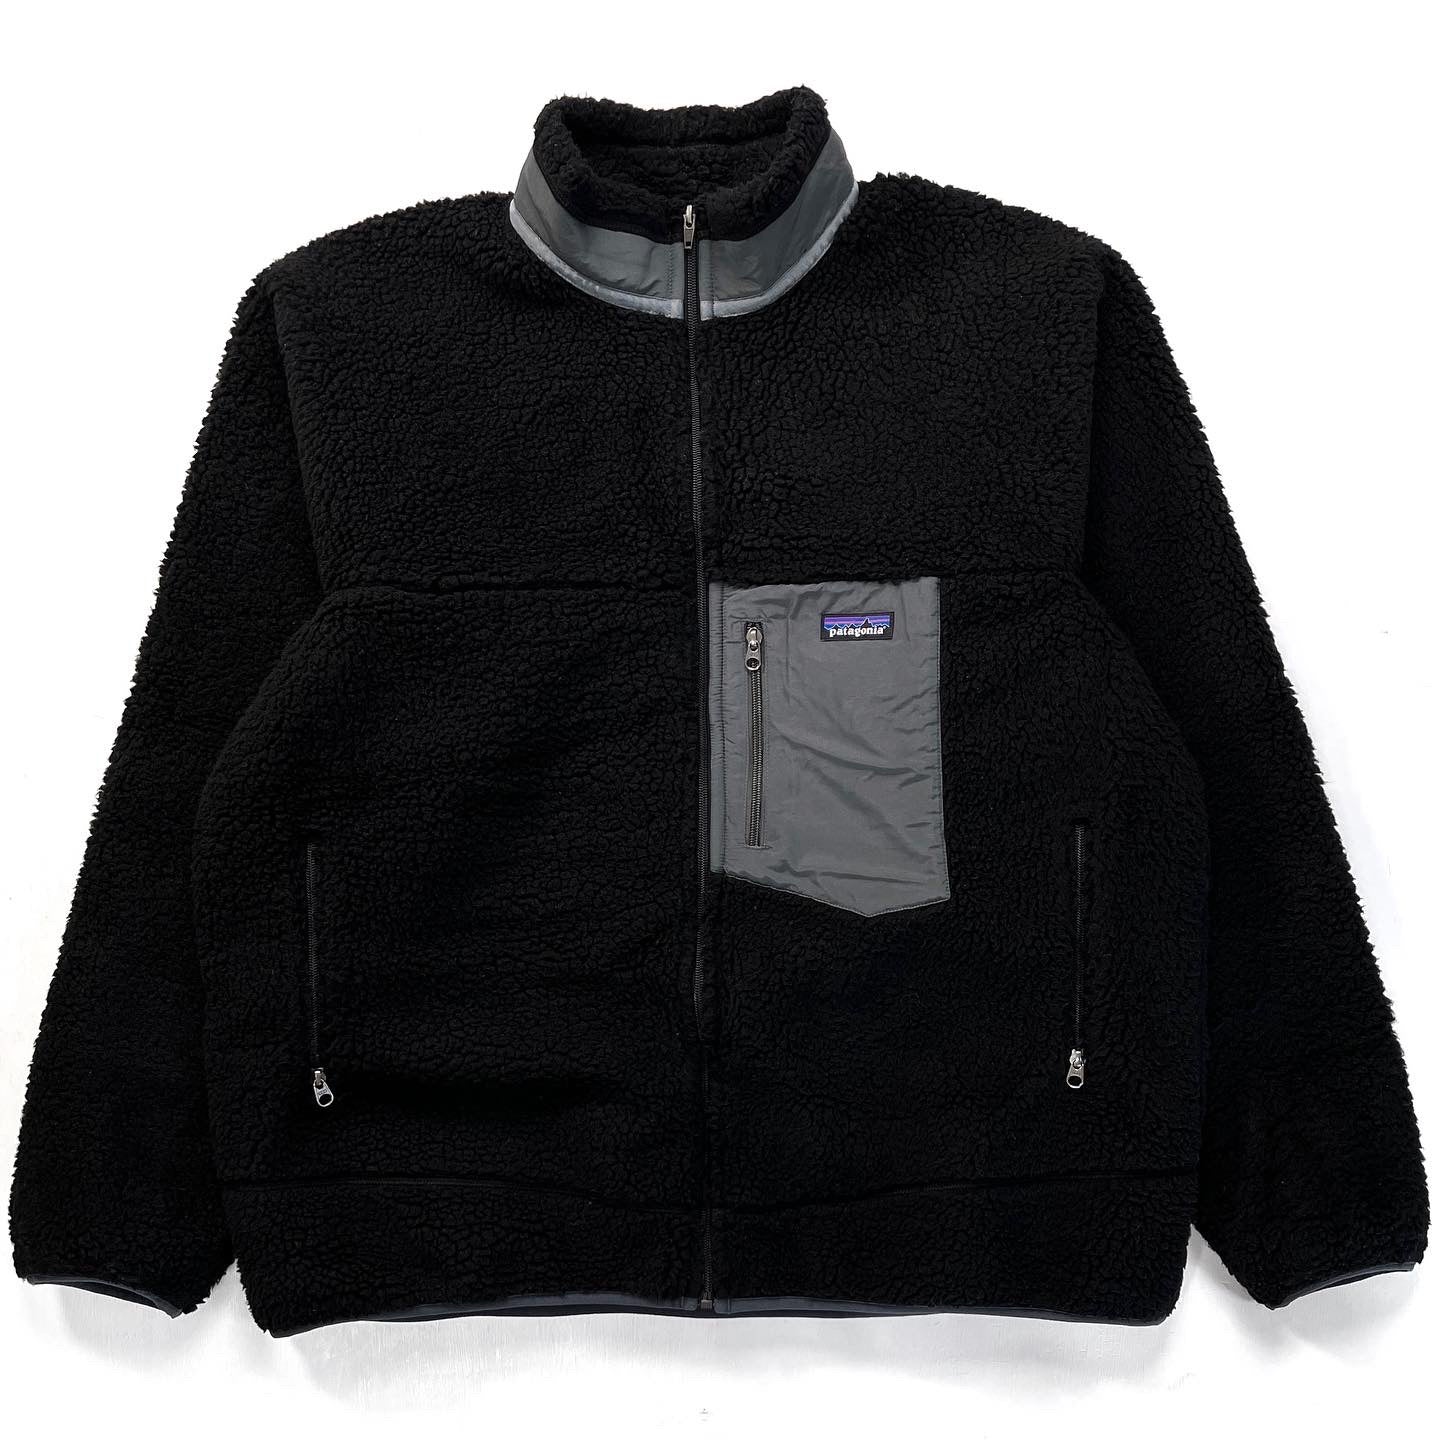 2015 Patagonia Classic Retro-X Fleece Jacket, Black & Grey (XXL)